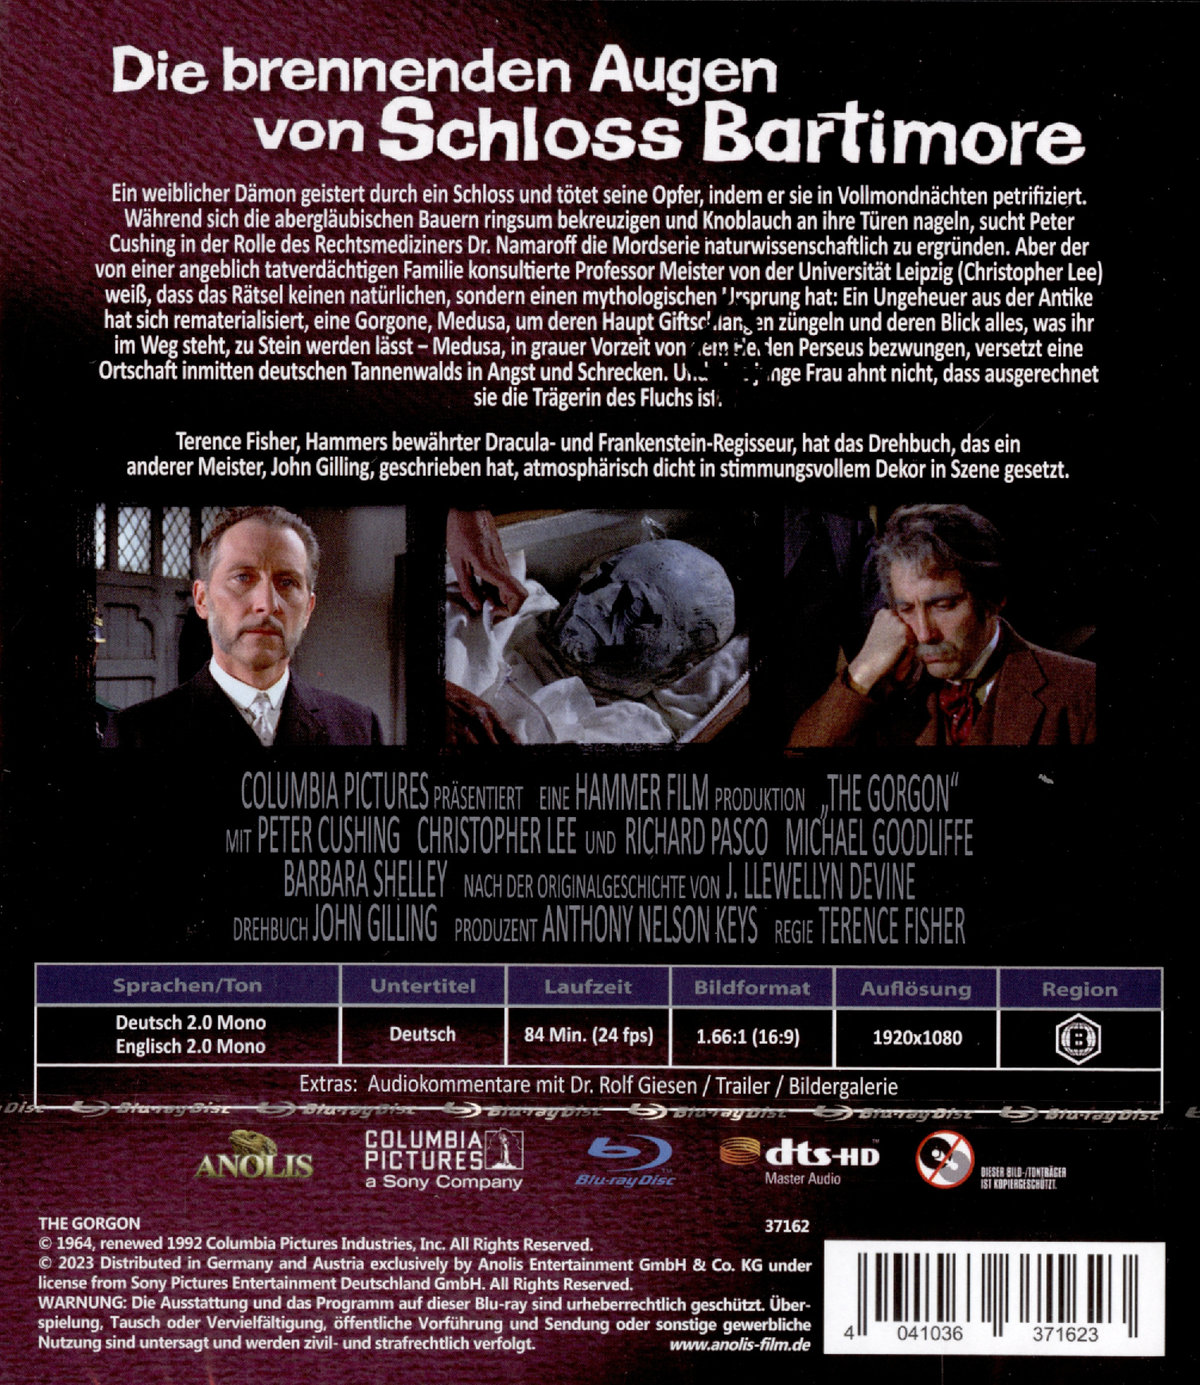 Brennenden Augen von Schloss Bartimore, Die - Uncut Edition  (blu-ray)